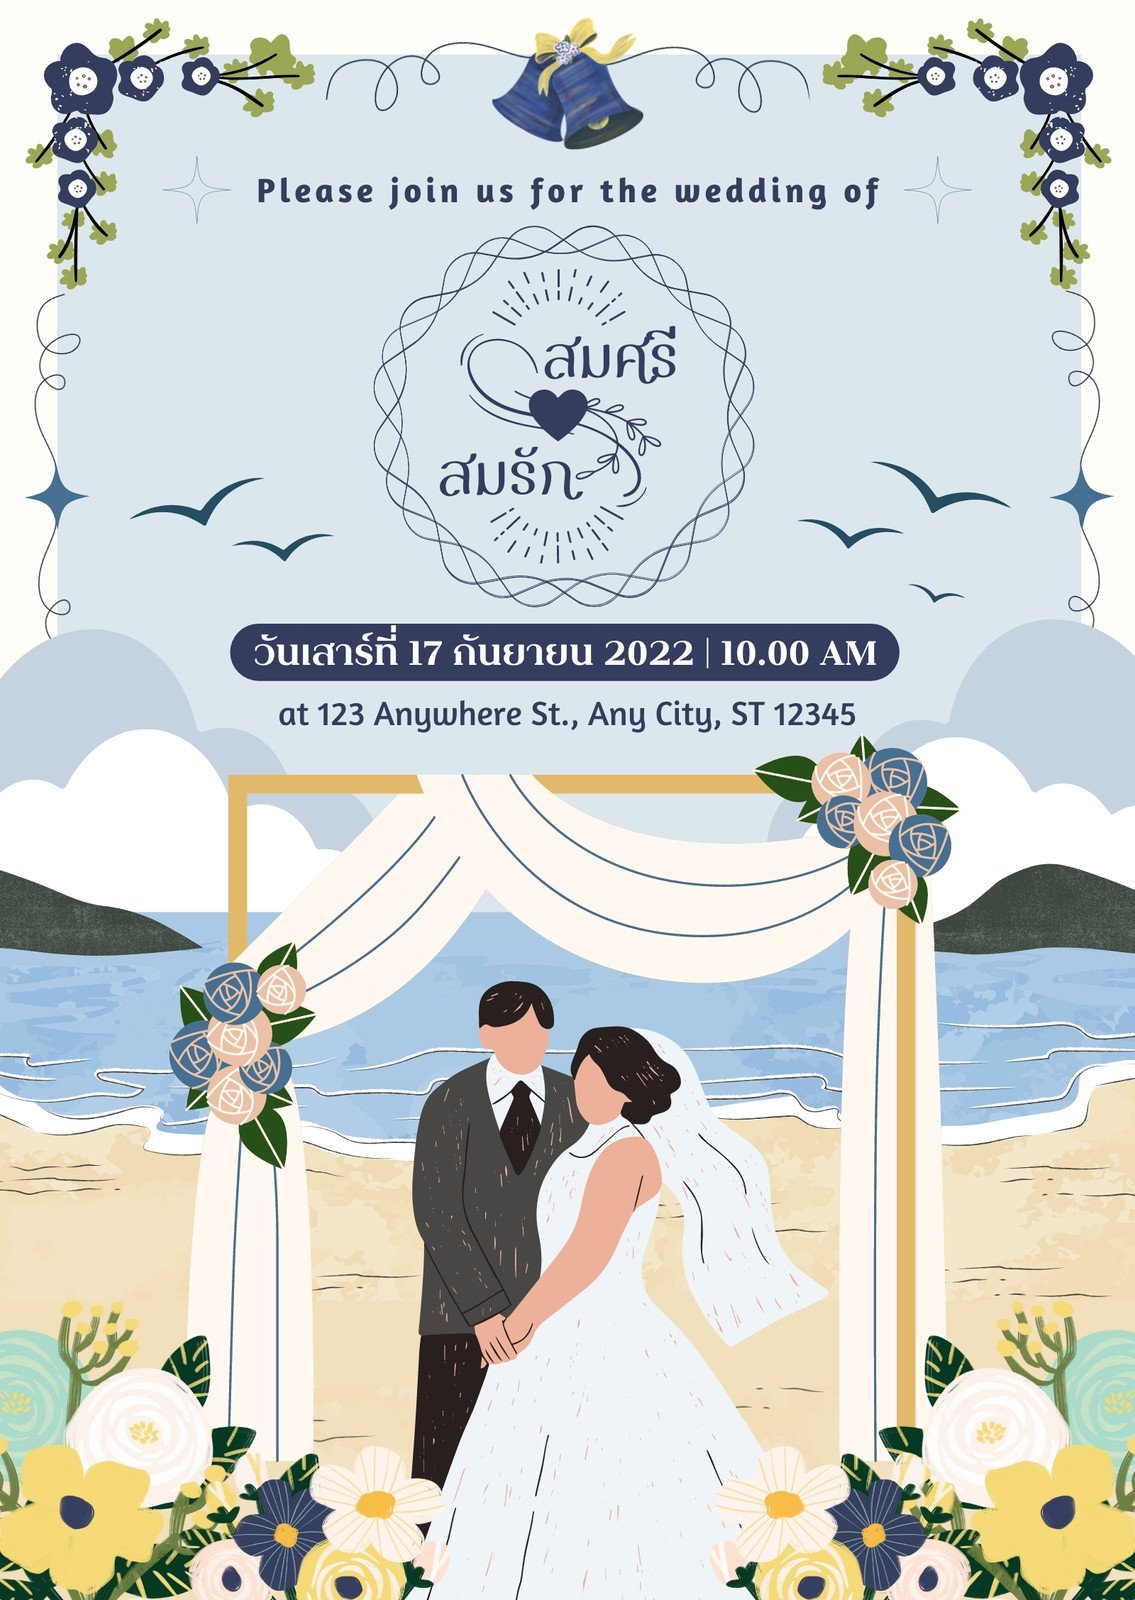 แบบการ์ดแต่งงาน บัตรเชิญงานแต่งงาน ปรับแต่งออนไลน์ได้ง่ายๆ ที่ Canva